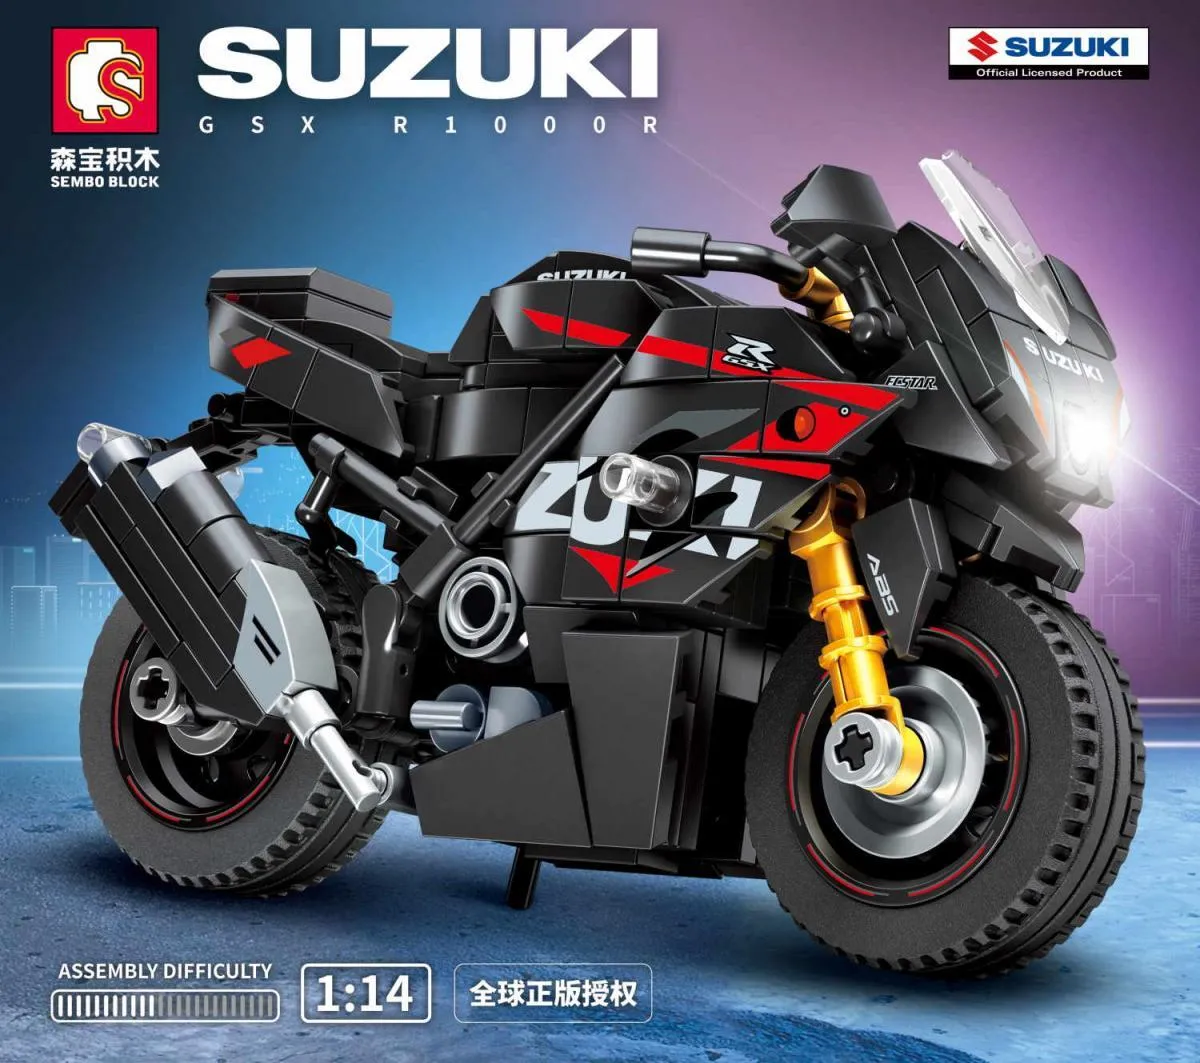 Suzuki™ GSX-R 1000 R Gallery